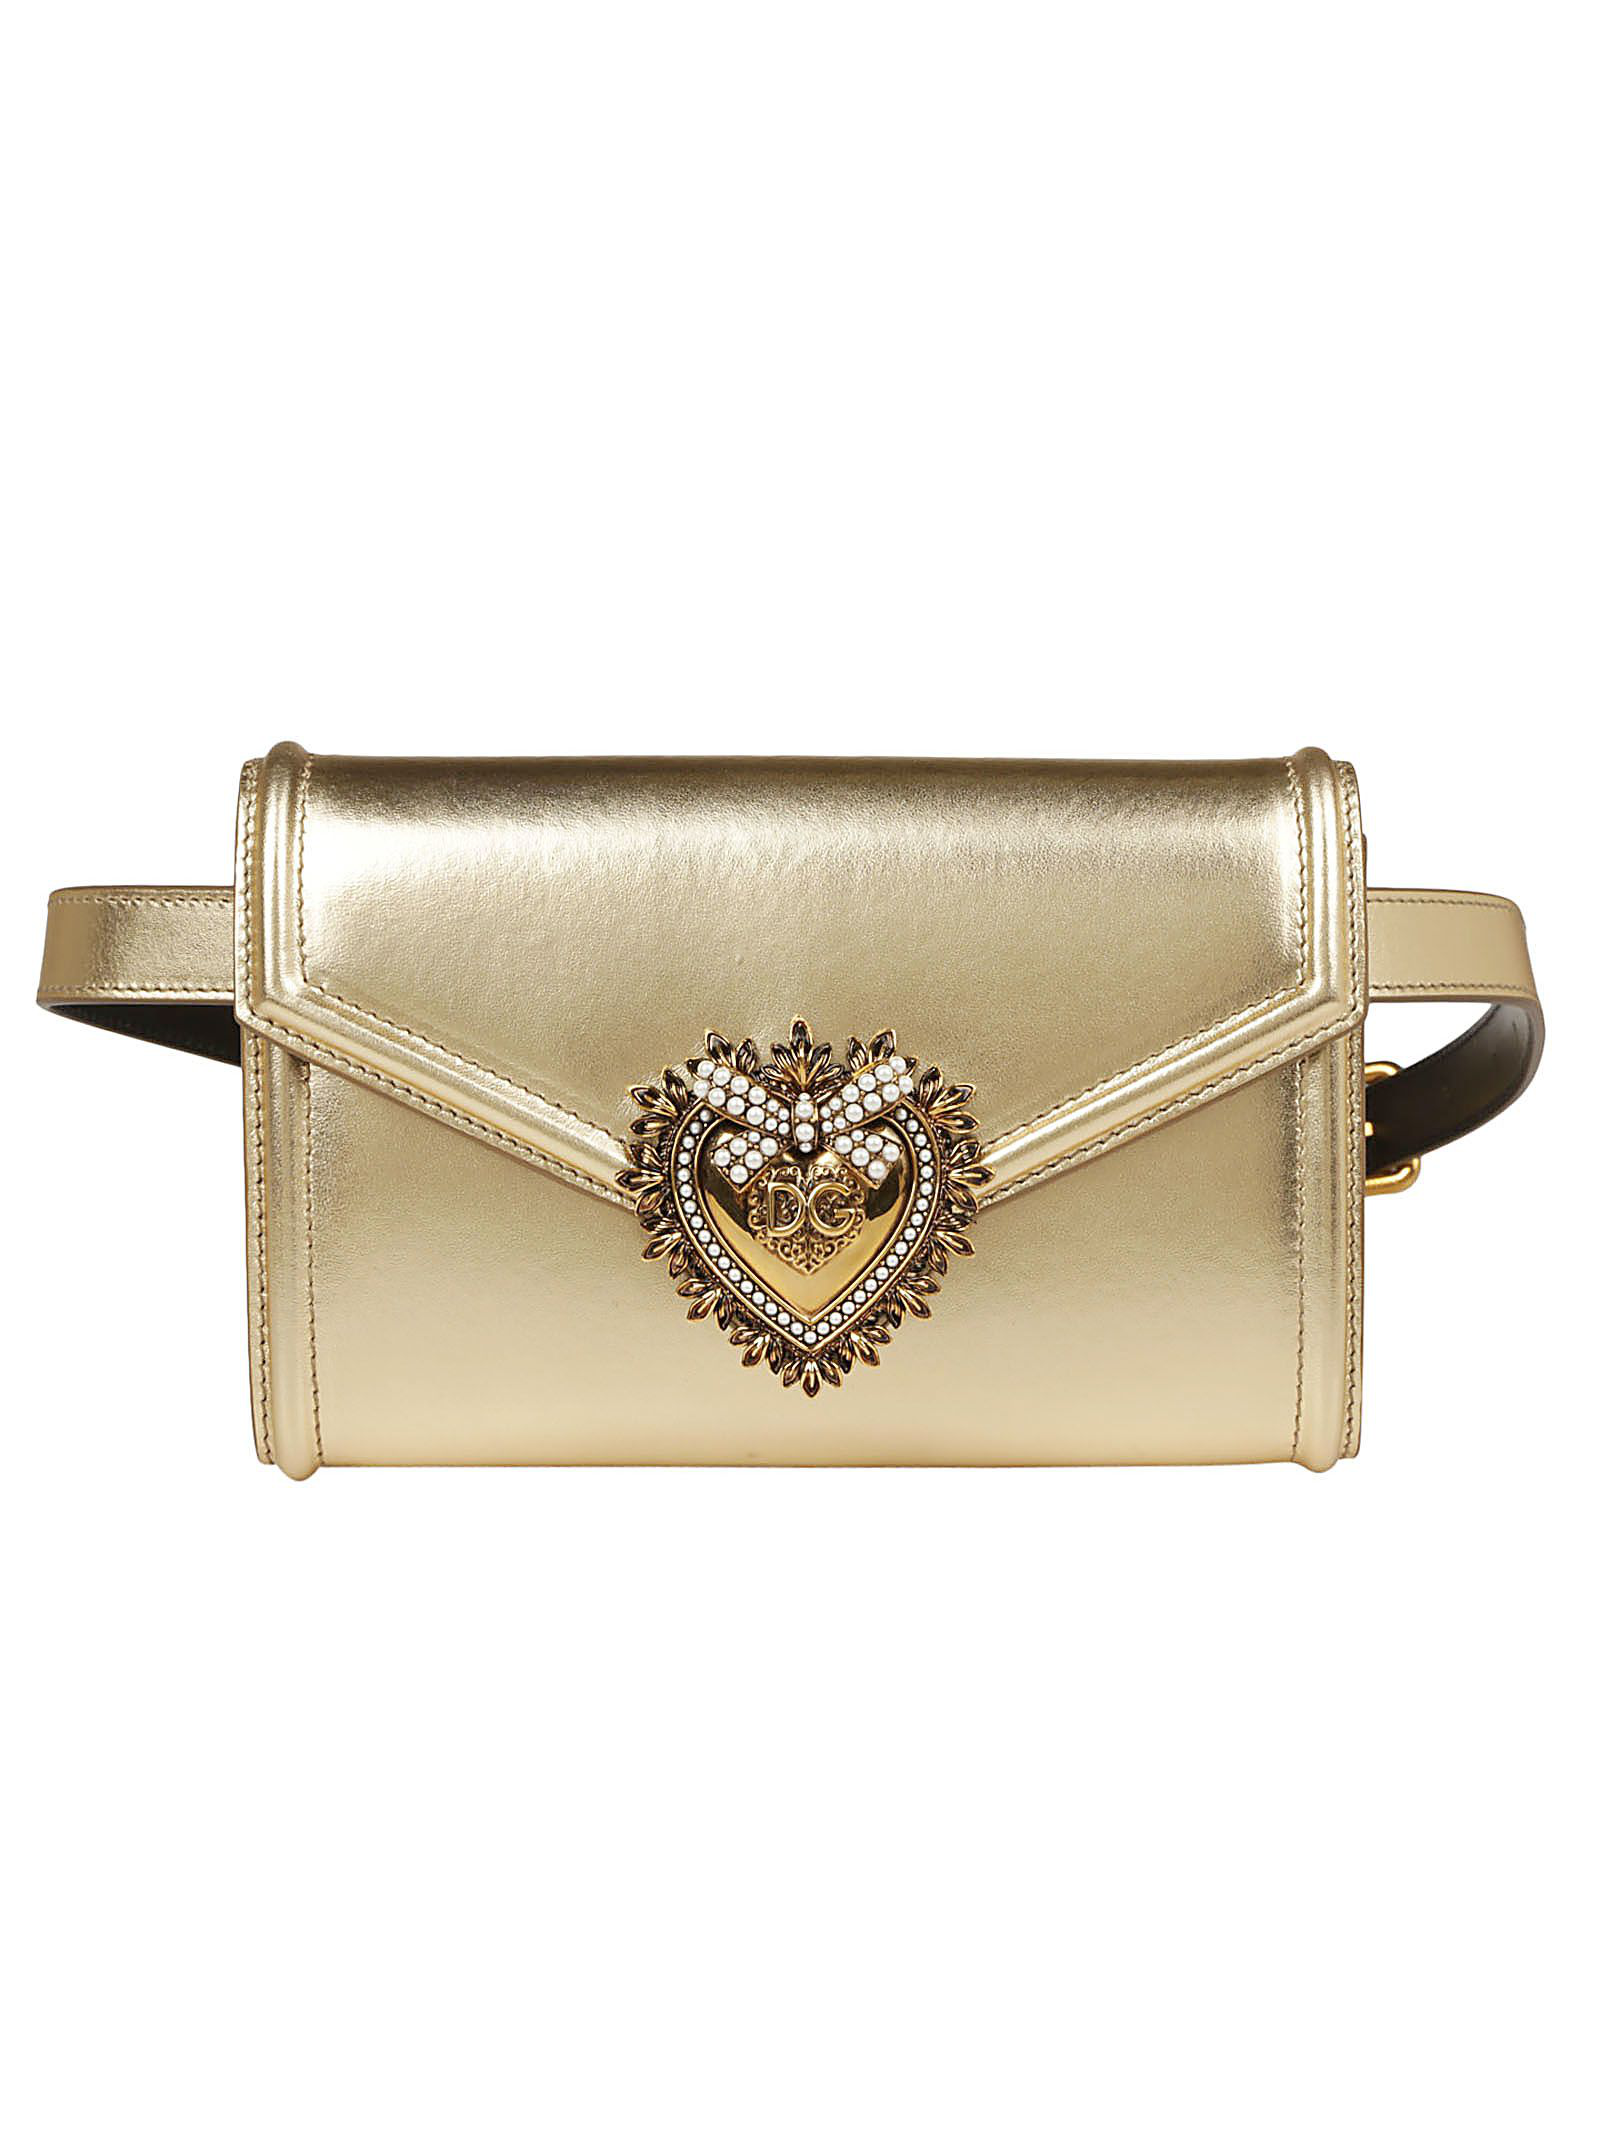 Dolce & Gabbana Devotion Buckle Belt Bags Belt Embellished